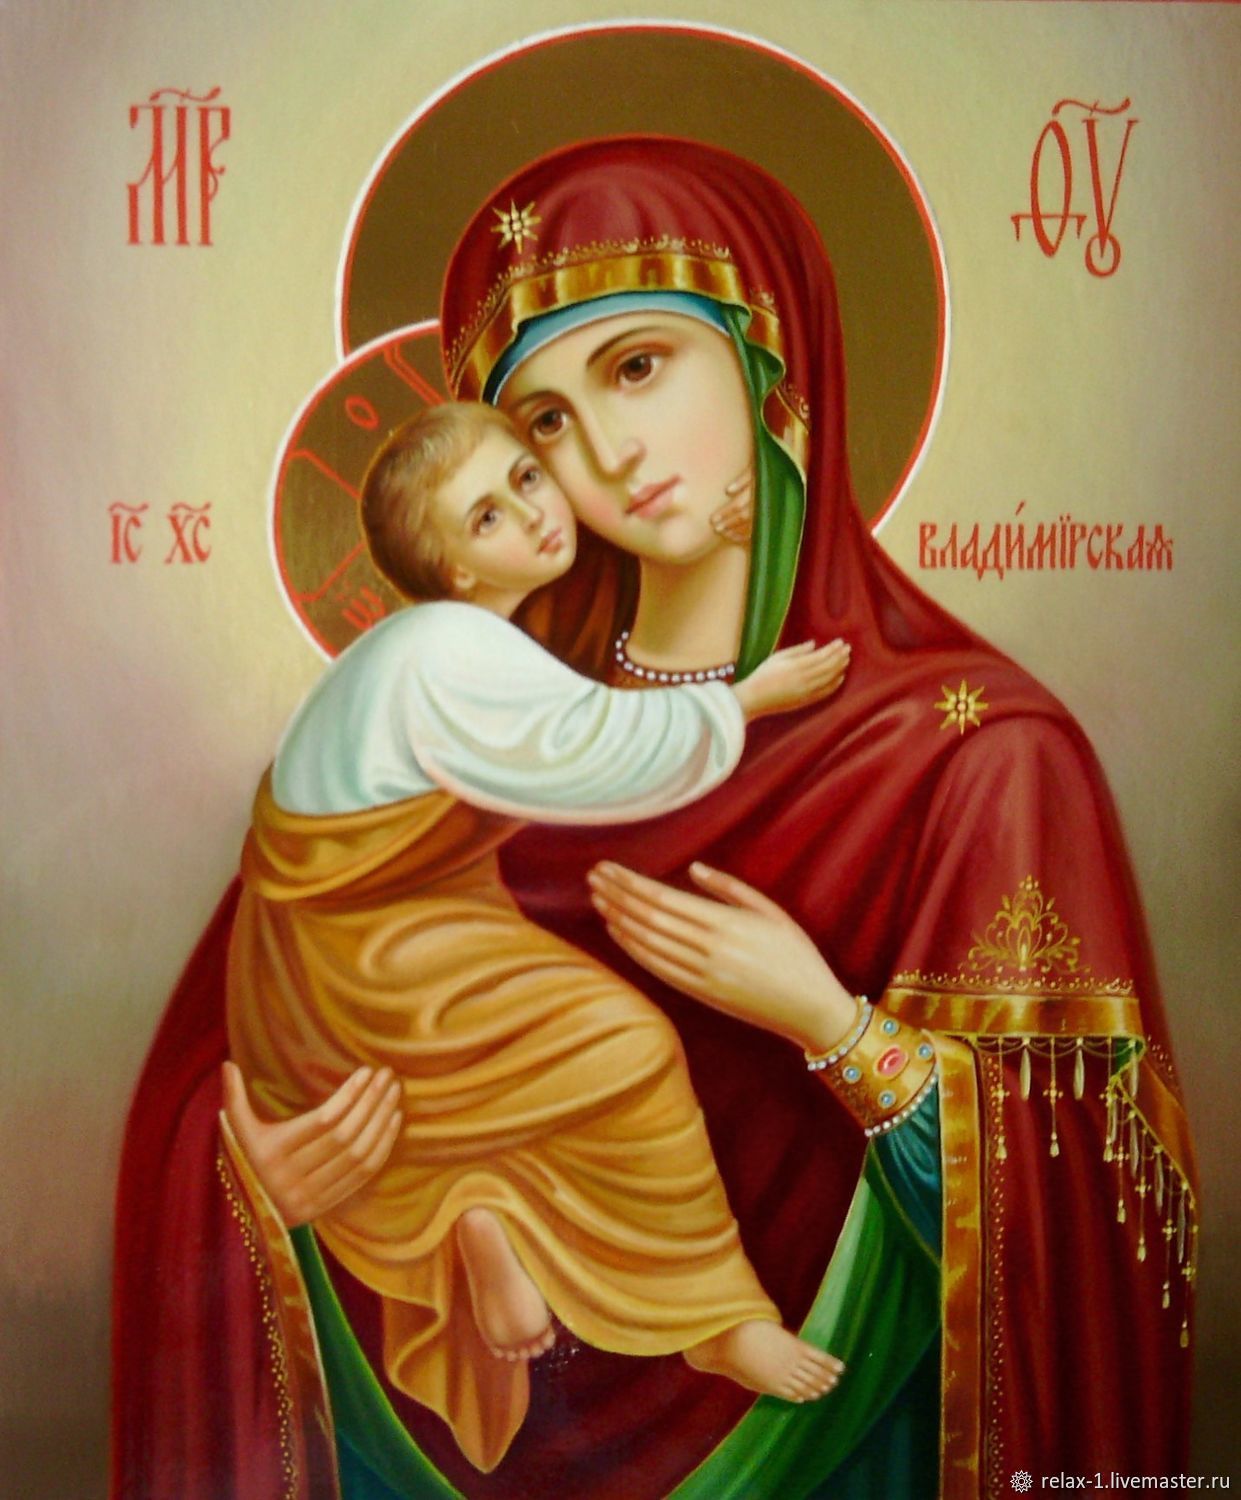 Иконка Казанской Божьей Матери: выберите лучшую фотографию для вас